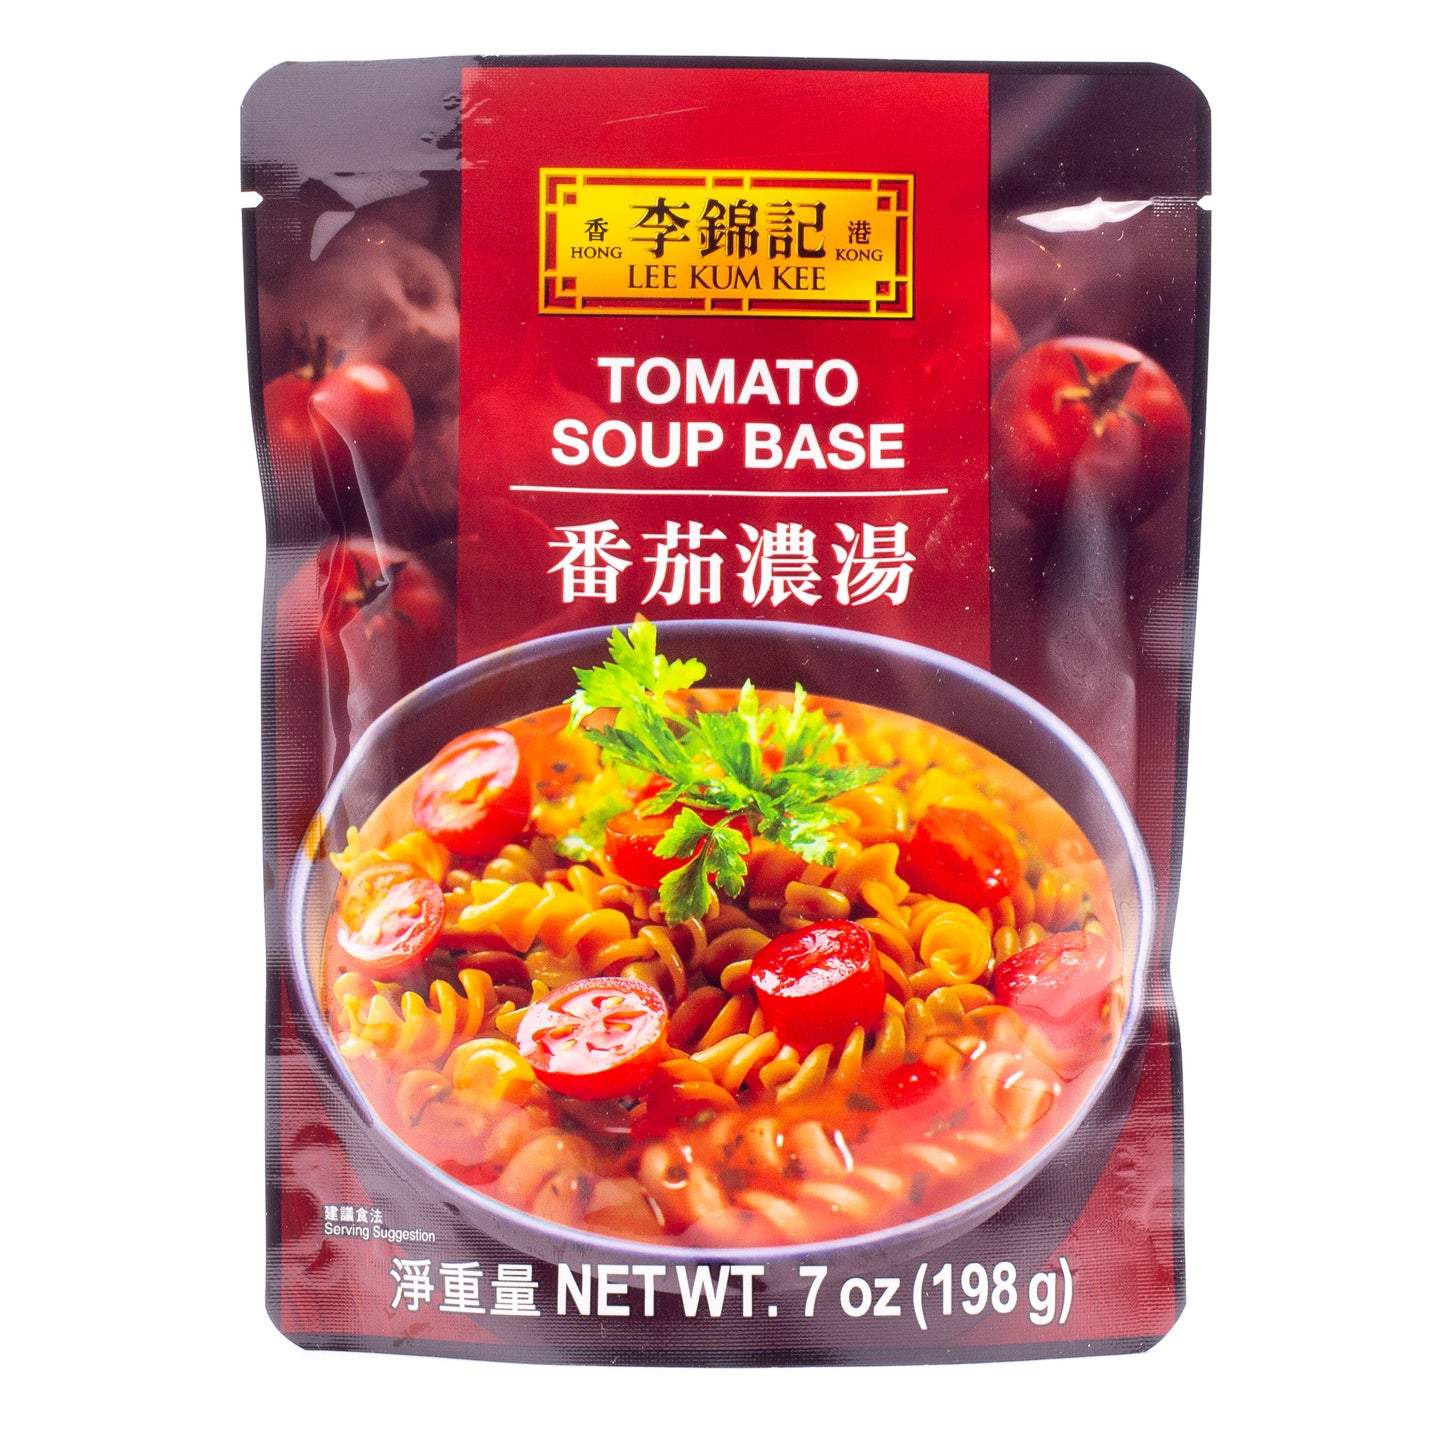 Lee Kum Kee Tomato Soup Base番茄浓汤 (7 OZ)